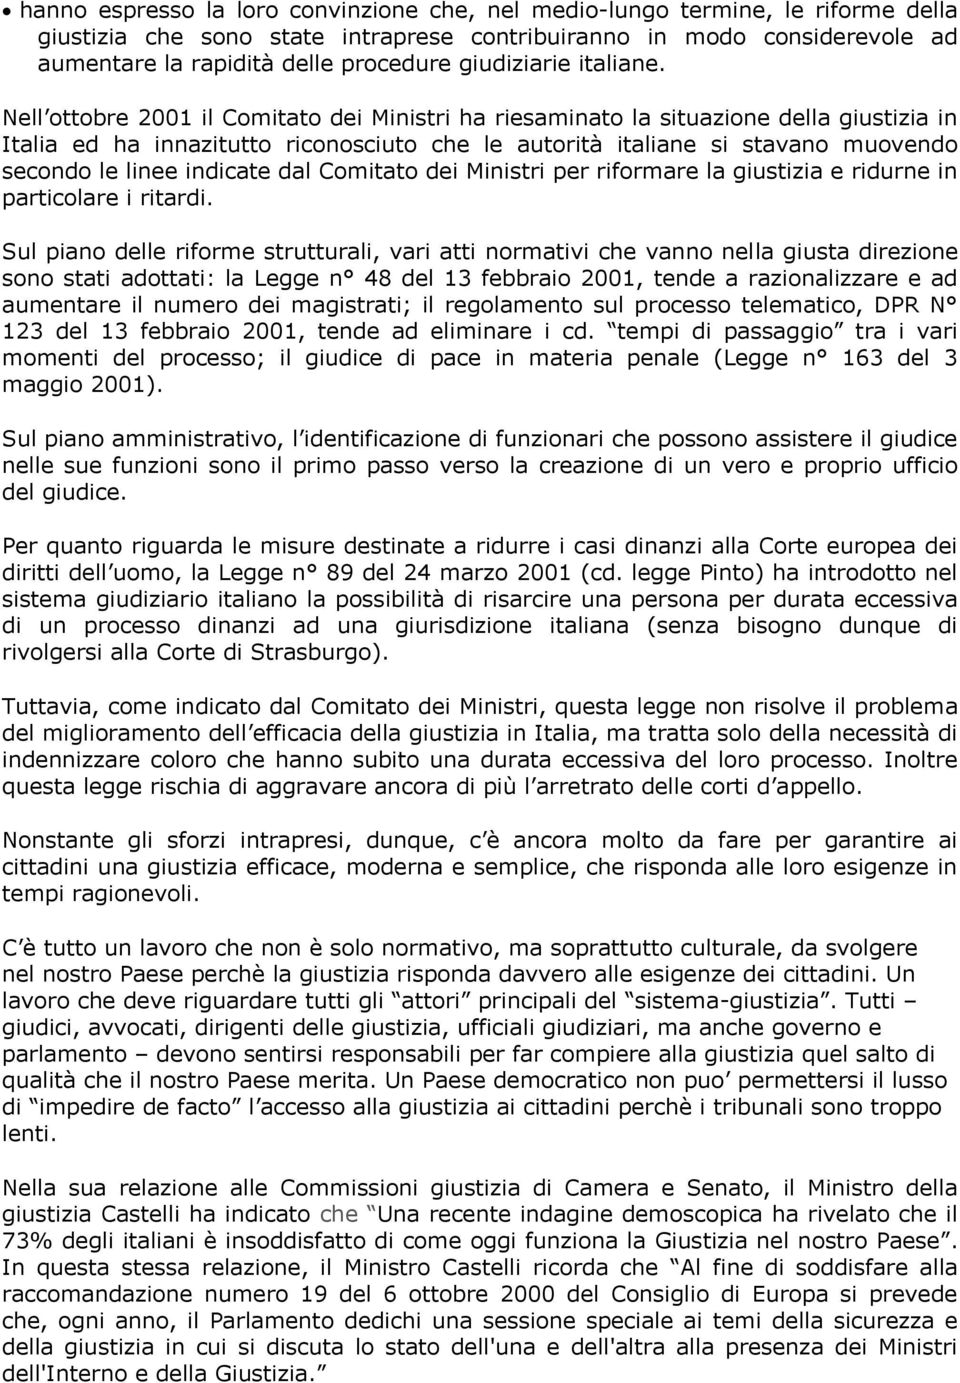 Nell ottobre 2001 il Comitato dei Ministri ha riesaminato la situazione della giustizia in Italia ed ha innazitutto riconosciuto che le autorità italiane si stavano muovendo secondo le linee indicate